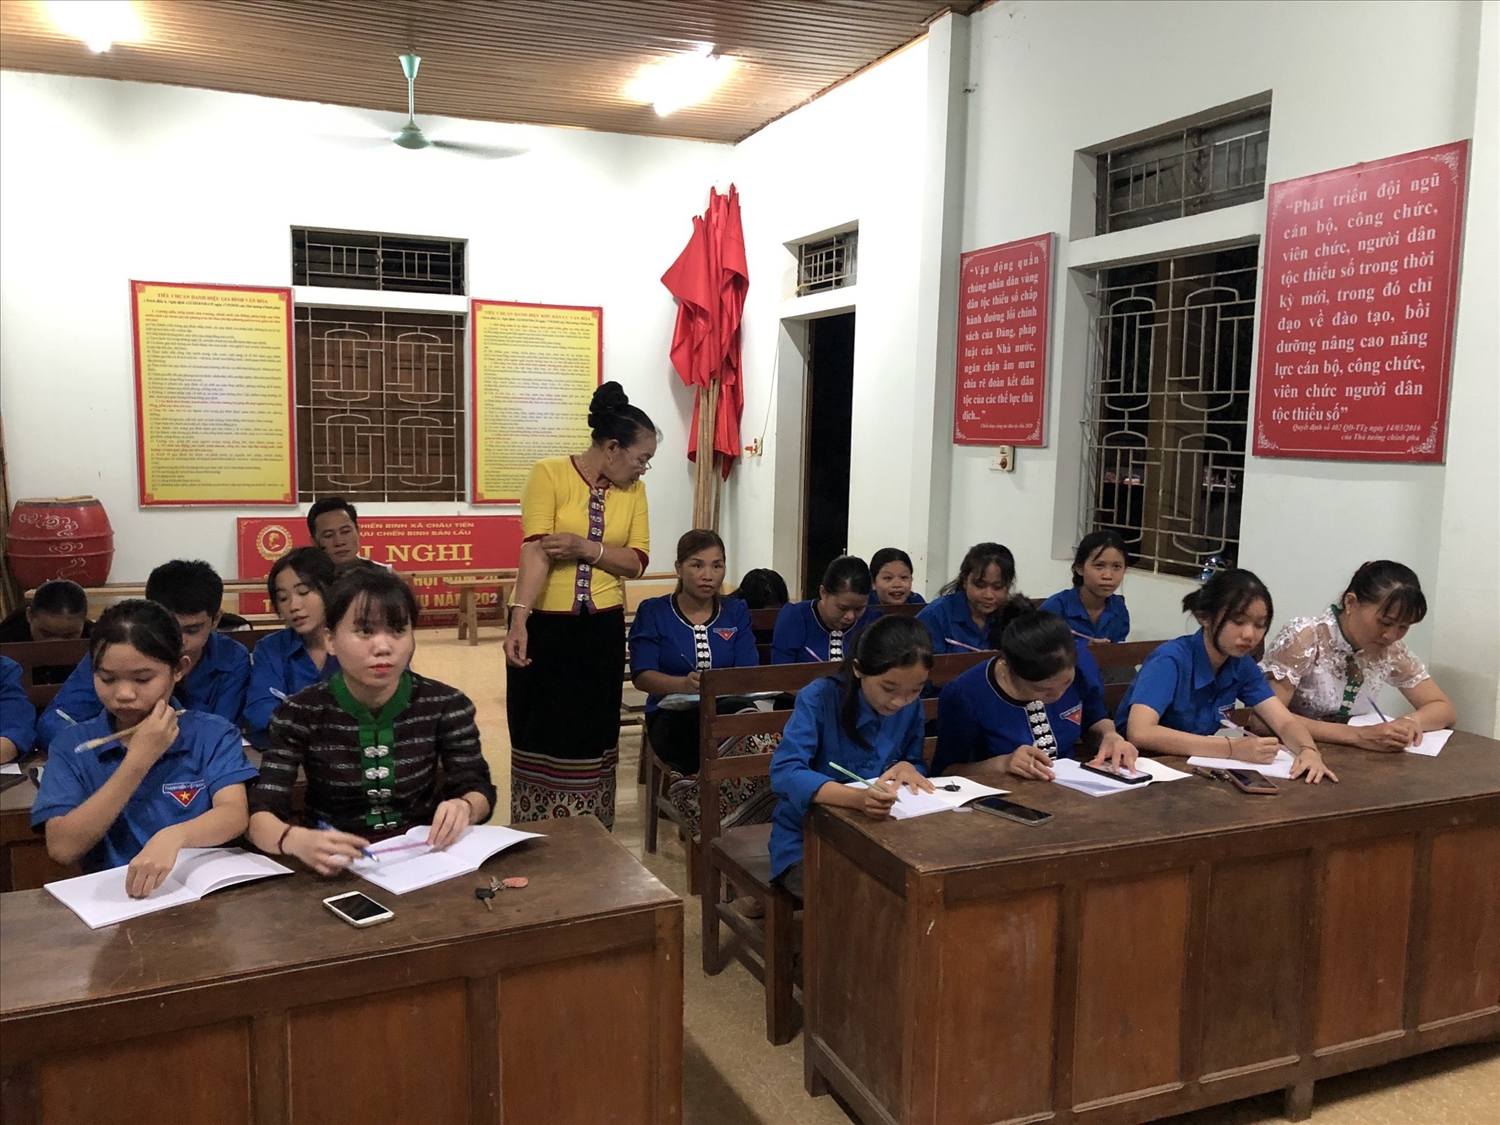 Lớp học chữ Thái cổ tại xã Châu Tiến, huyện Quỳ Châu (Nghệ An)